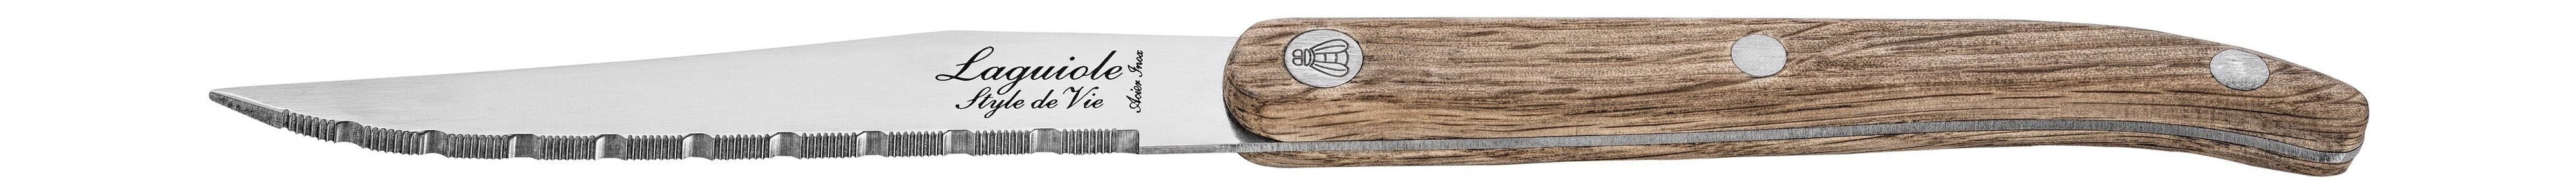 Style De Vie Authentique Laguiole Innovation Line Steak Knives 6 Piece Set Oak Wood, Sernotation Blade